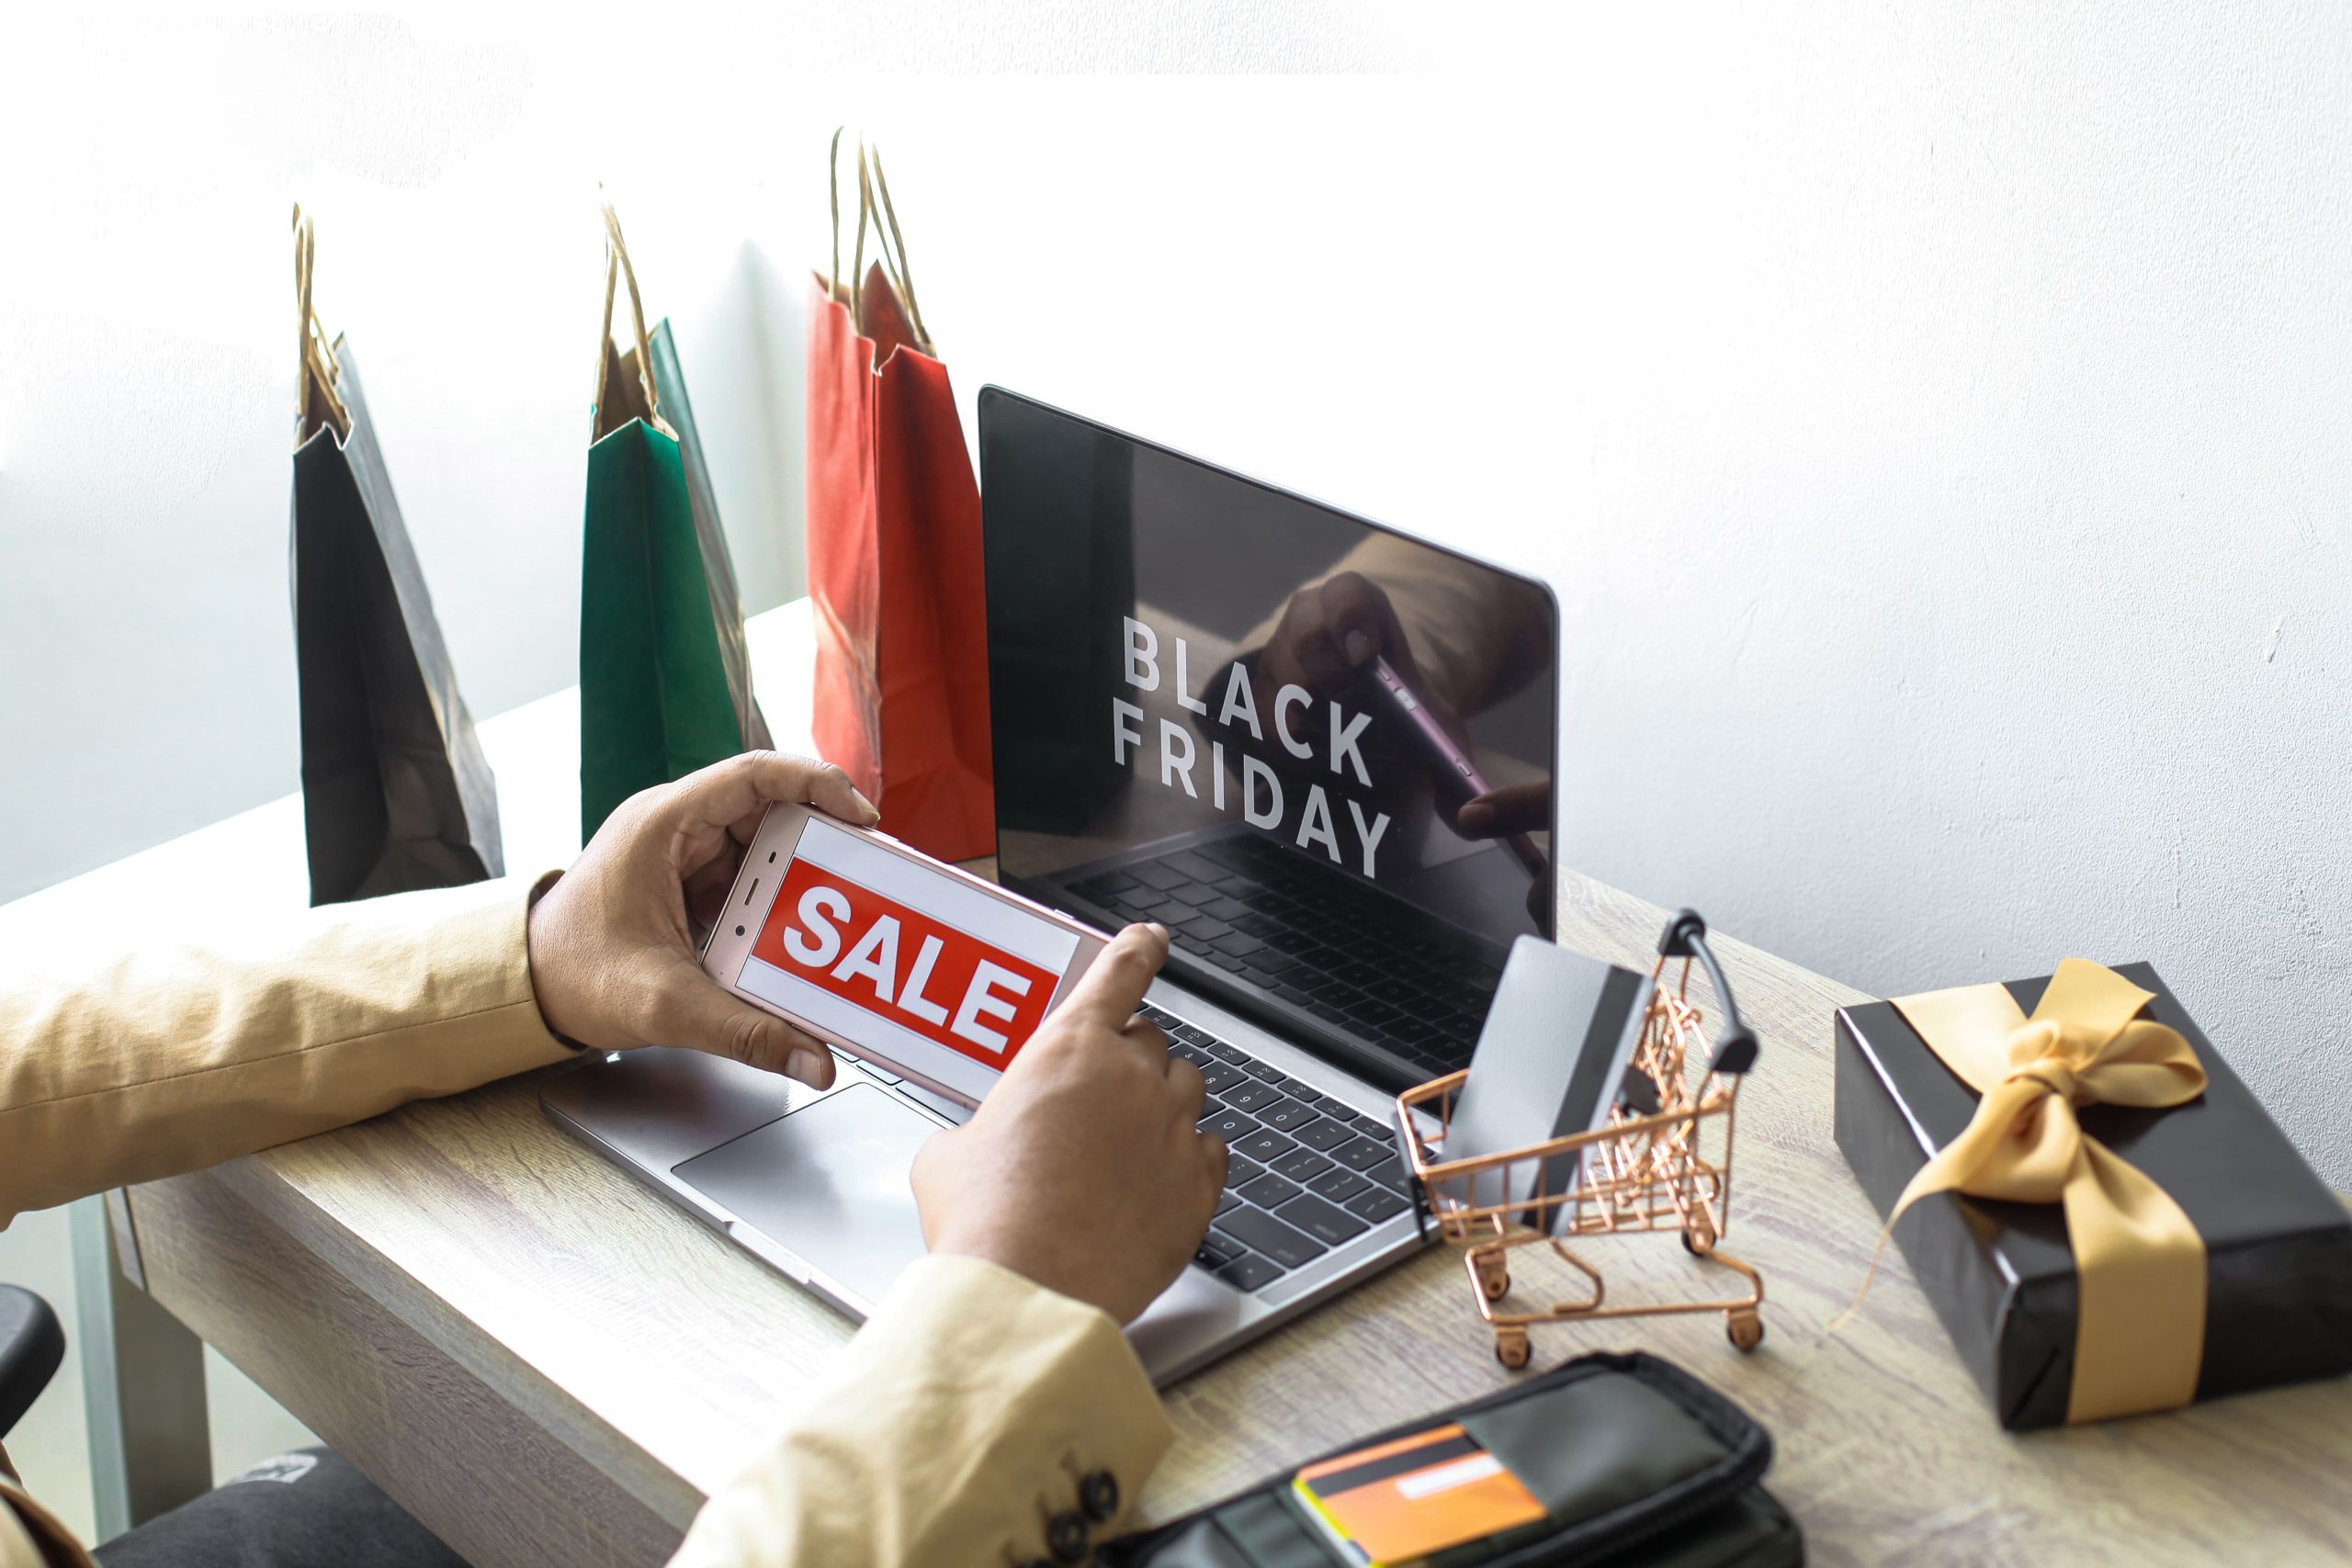 Skurriles Geschäft: falsche Feiertagsangebote, Laptop mit Black Friday Sale